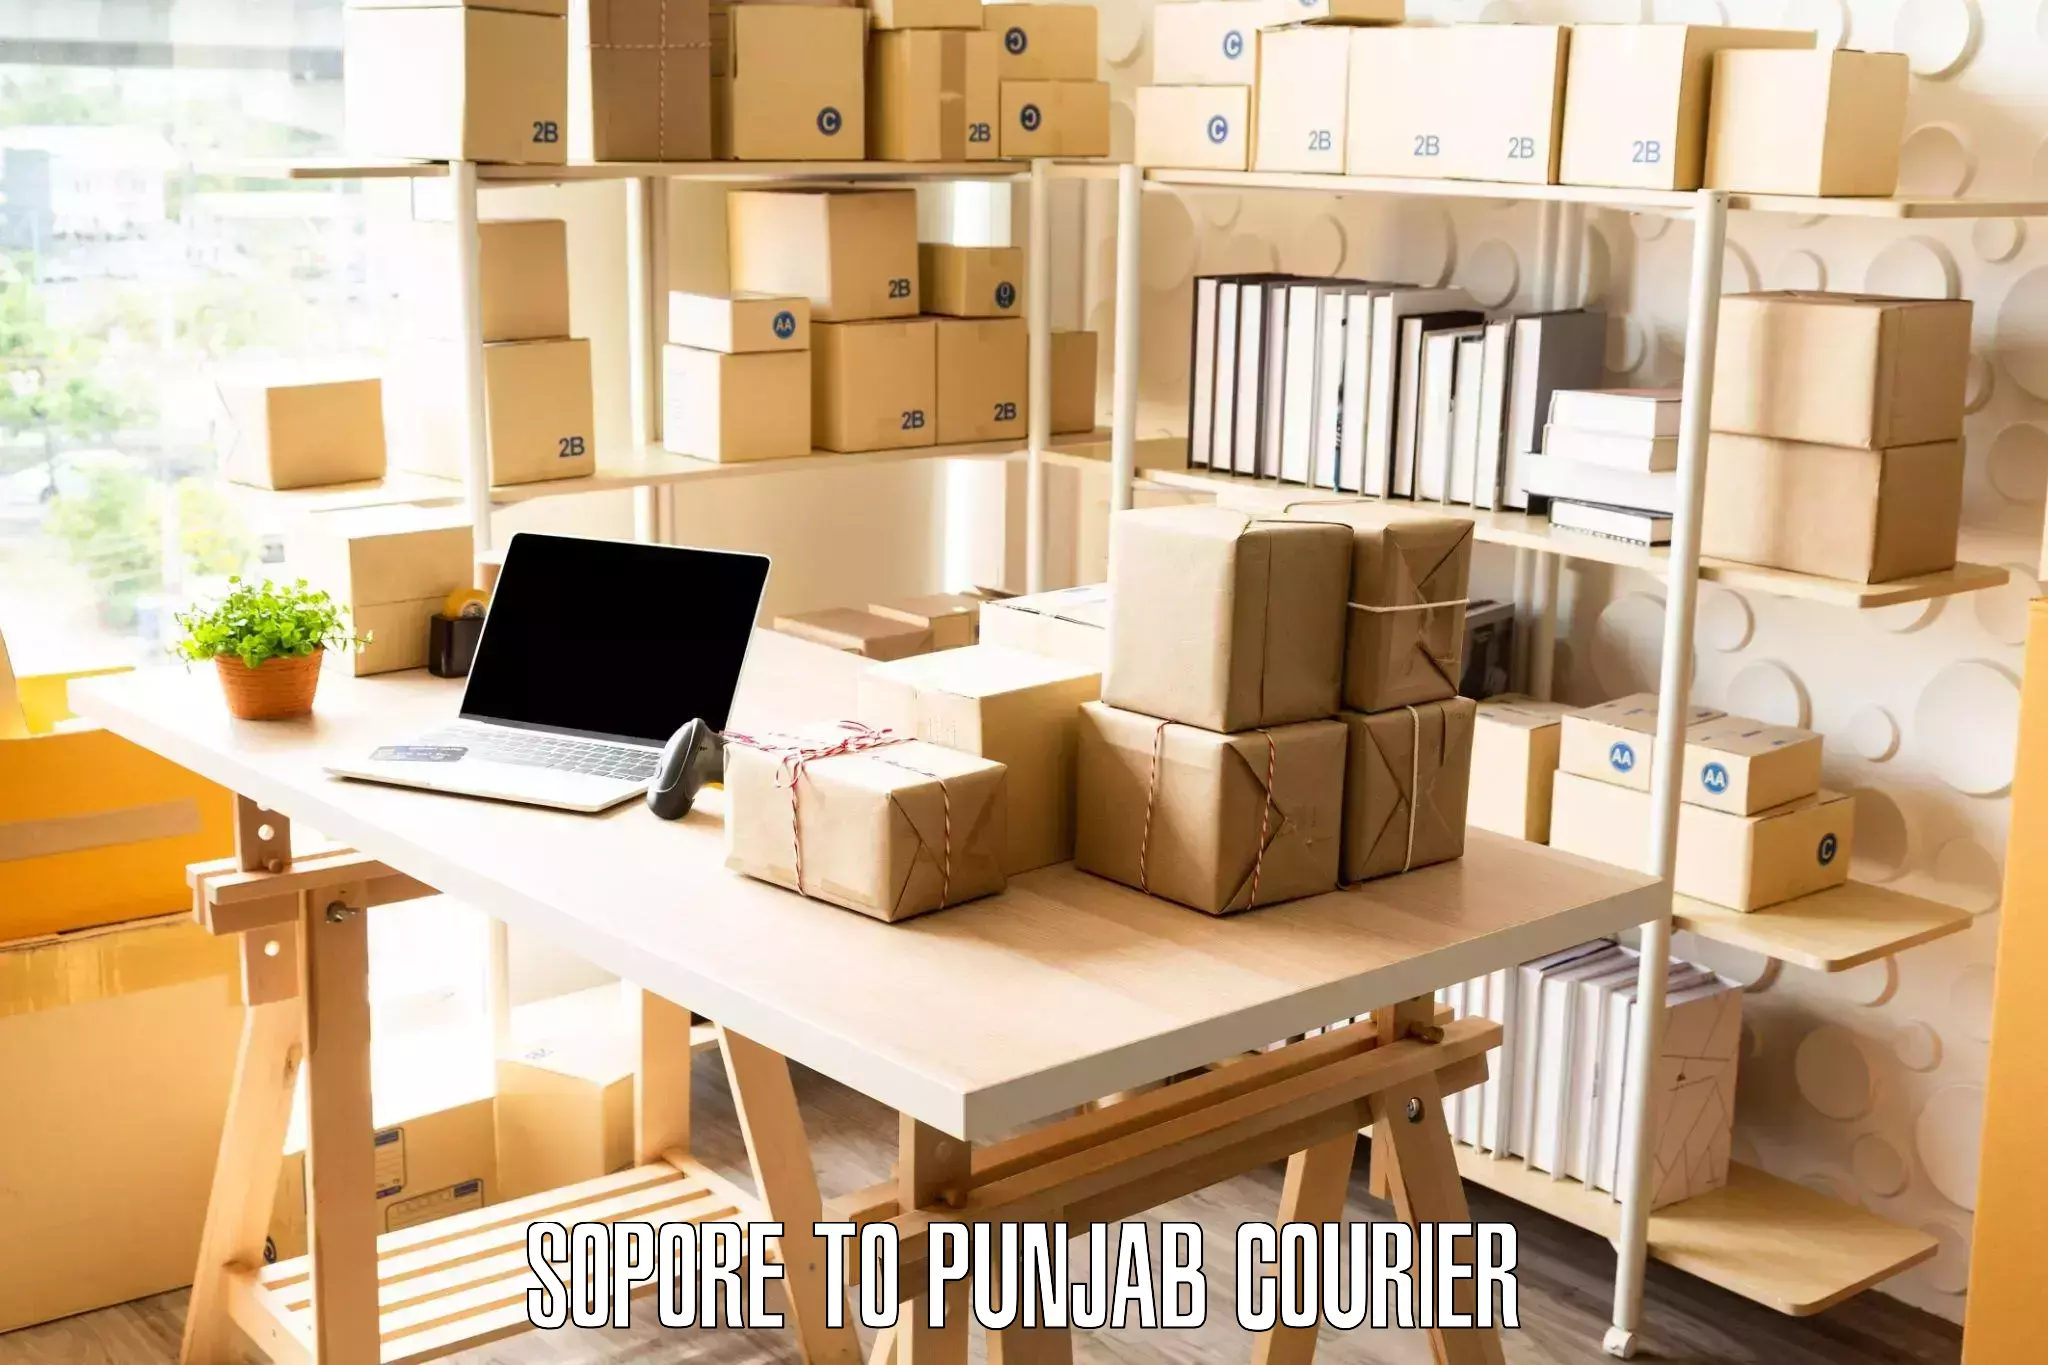 Furniture delivery service Sopore to Hoshiarpur